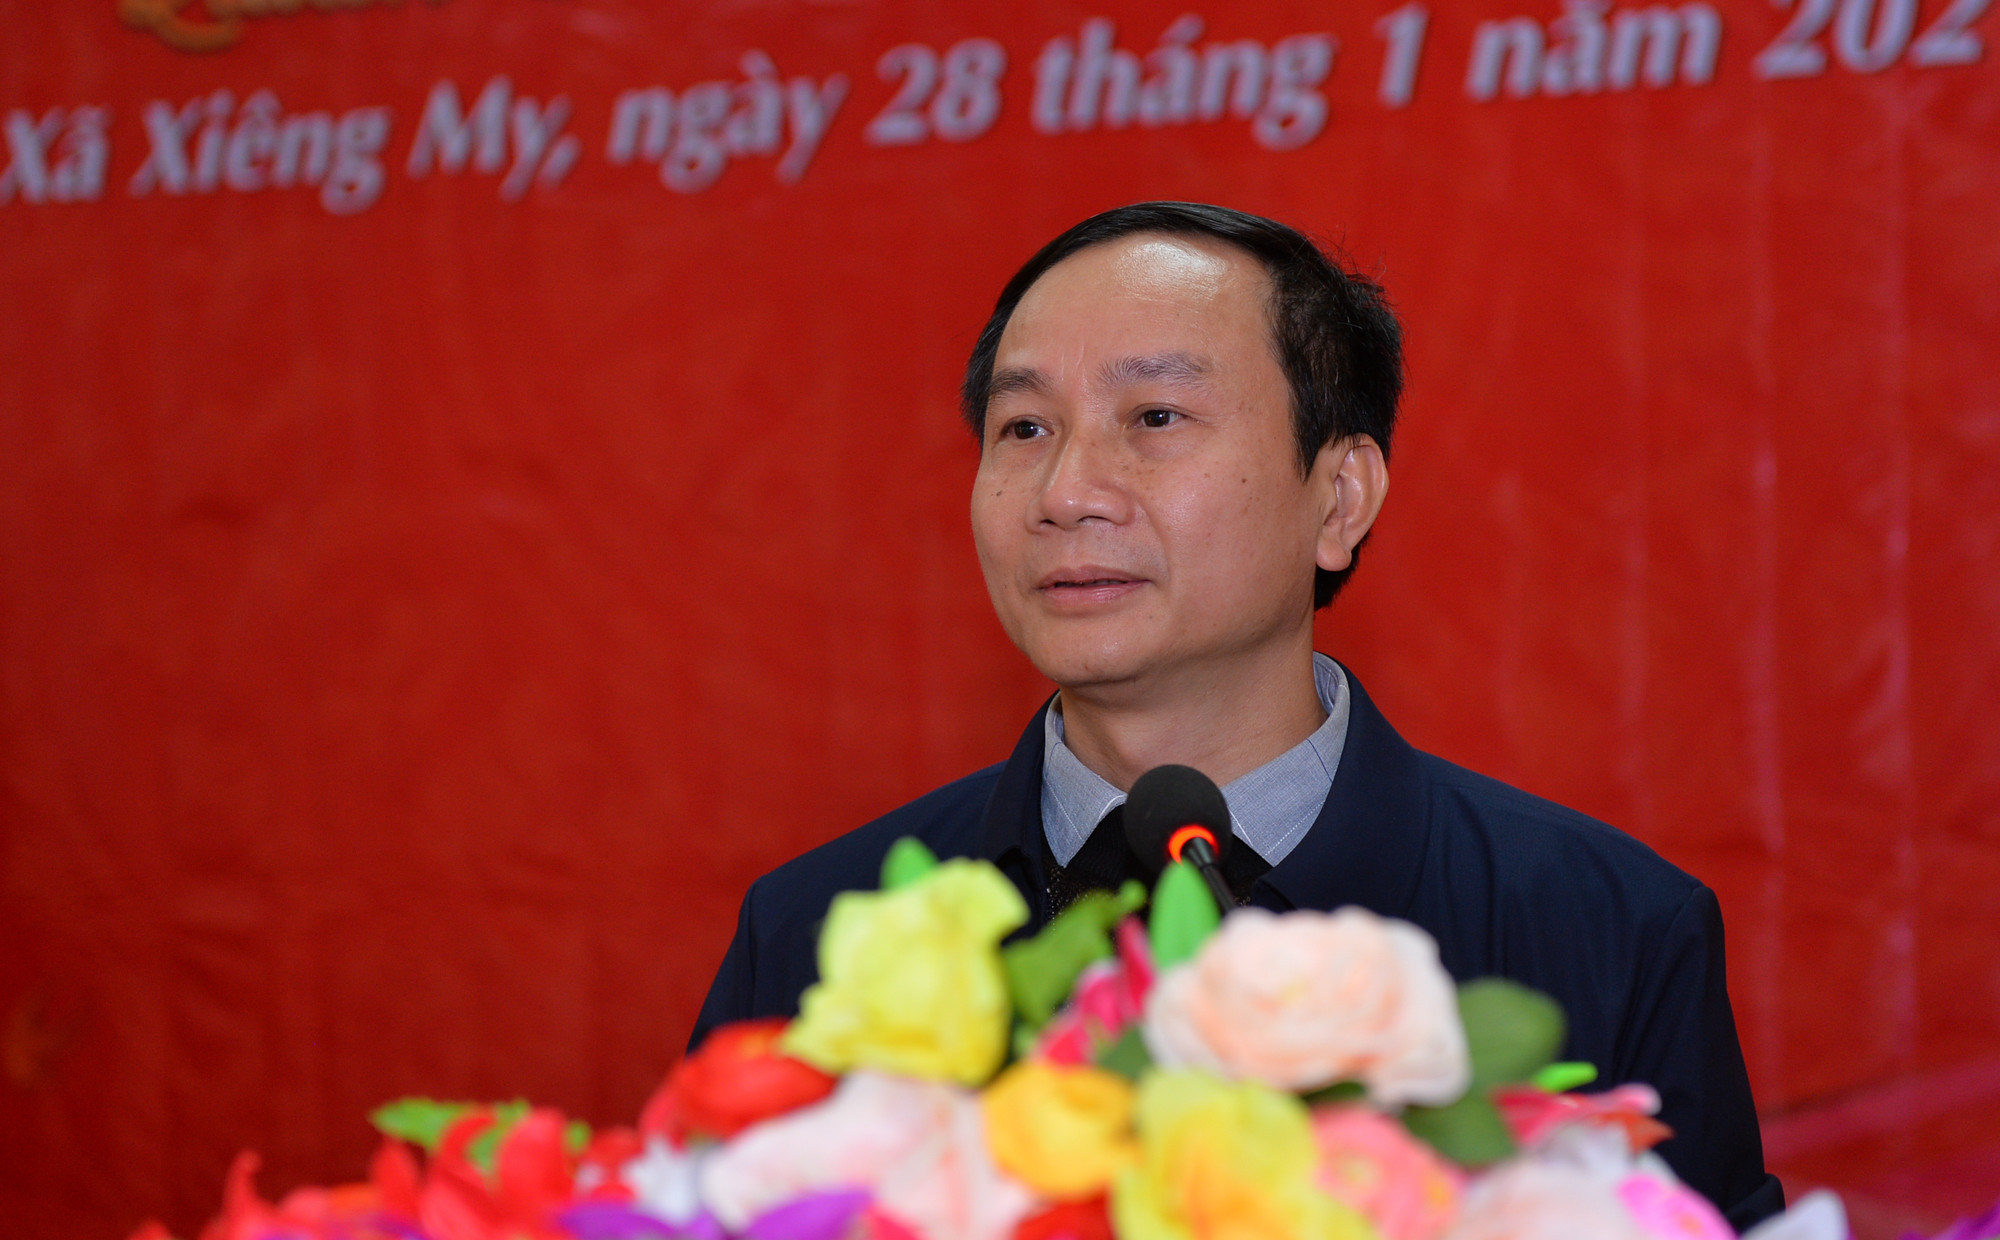 Đồng chí Trần Văn Hùng - Phó Tổng biên tập Báo Nghệ An phát biểu tại lễ trao quà. Ảnh: Thành Cường